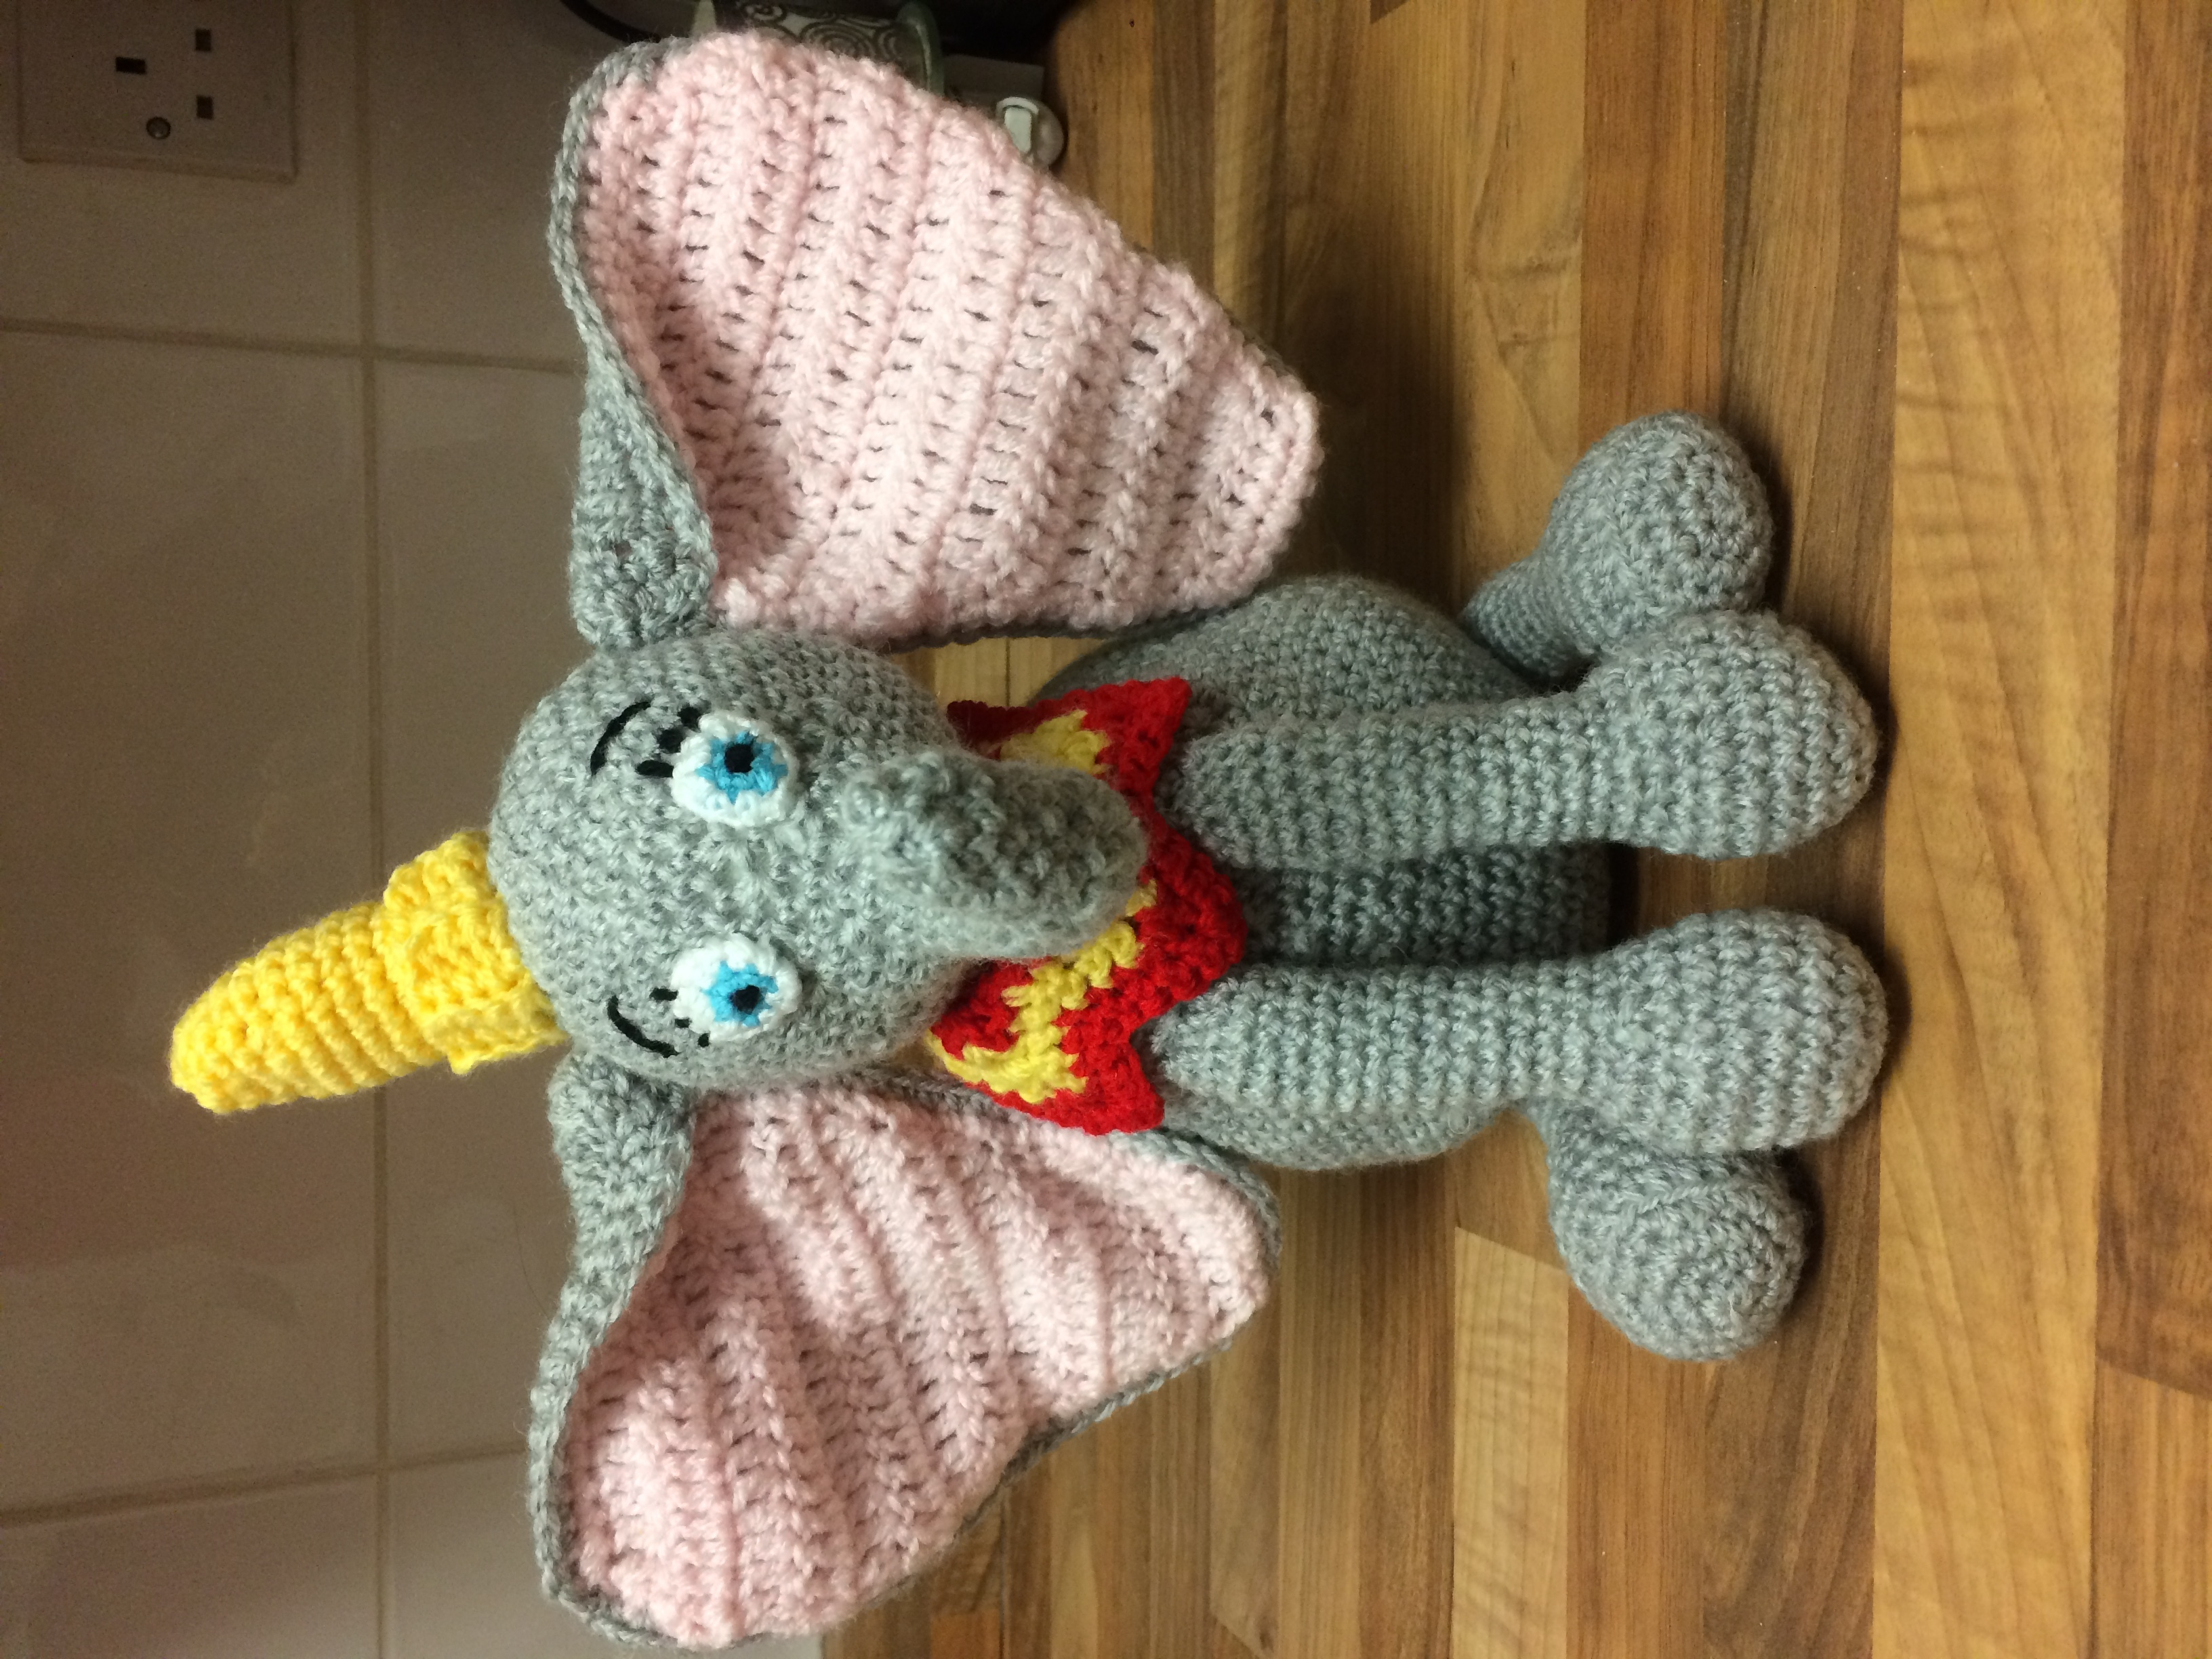 Crochet Dumbo Pattern Dumbo Crochet Project Karen Lovecrochet